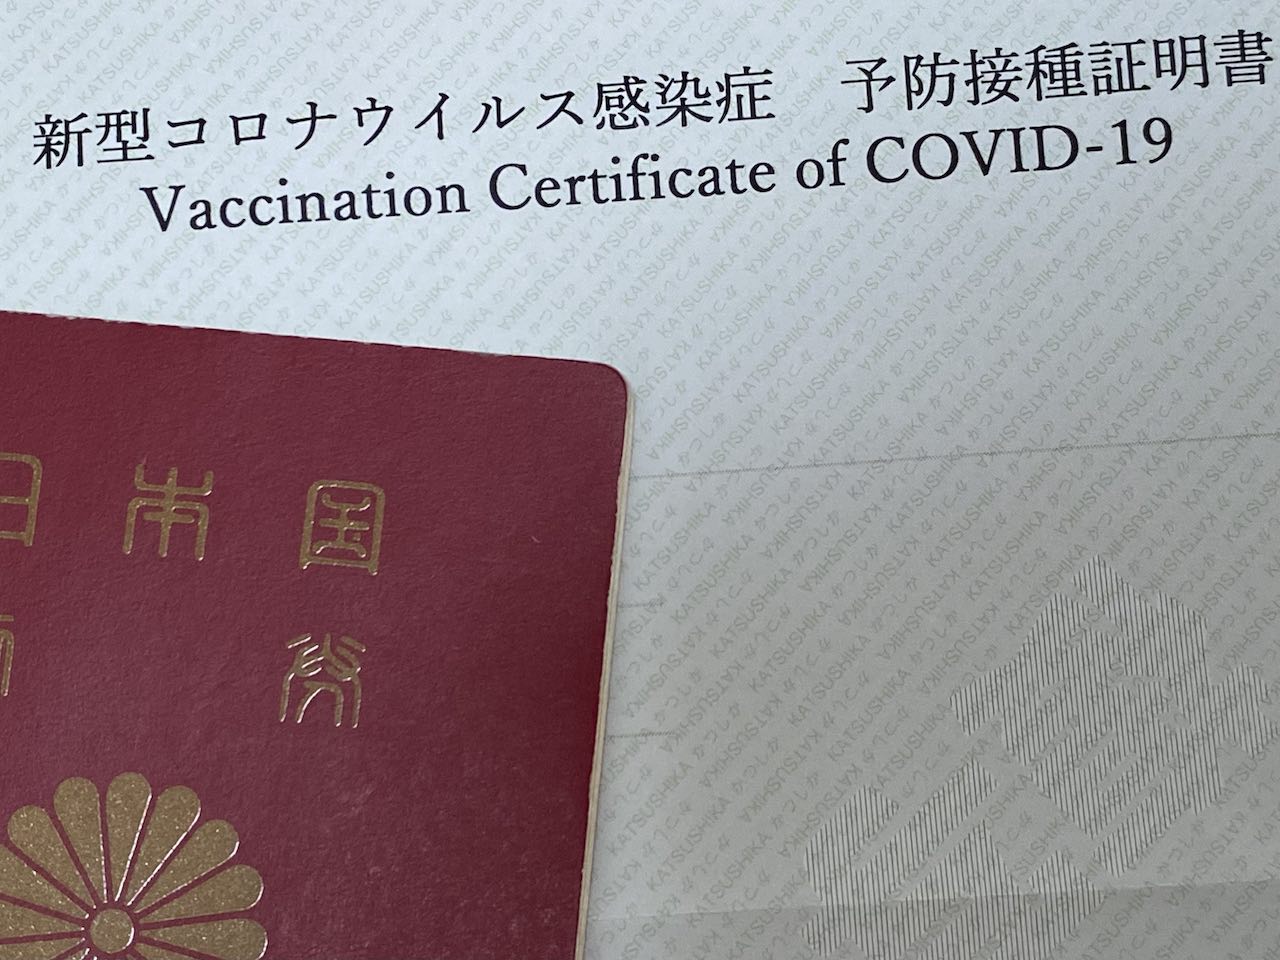 「新型コロナワクチン接種証明書」いわゆる「ワクチンパスポート」